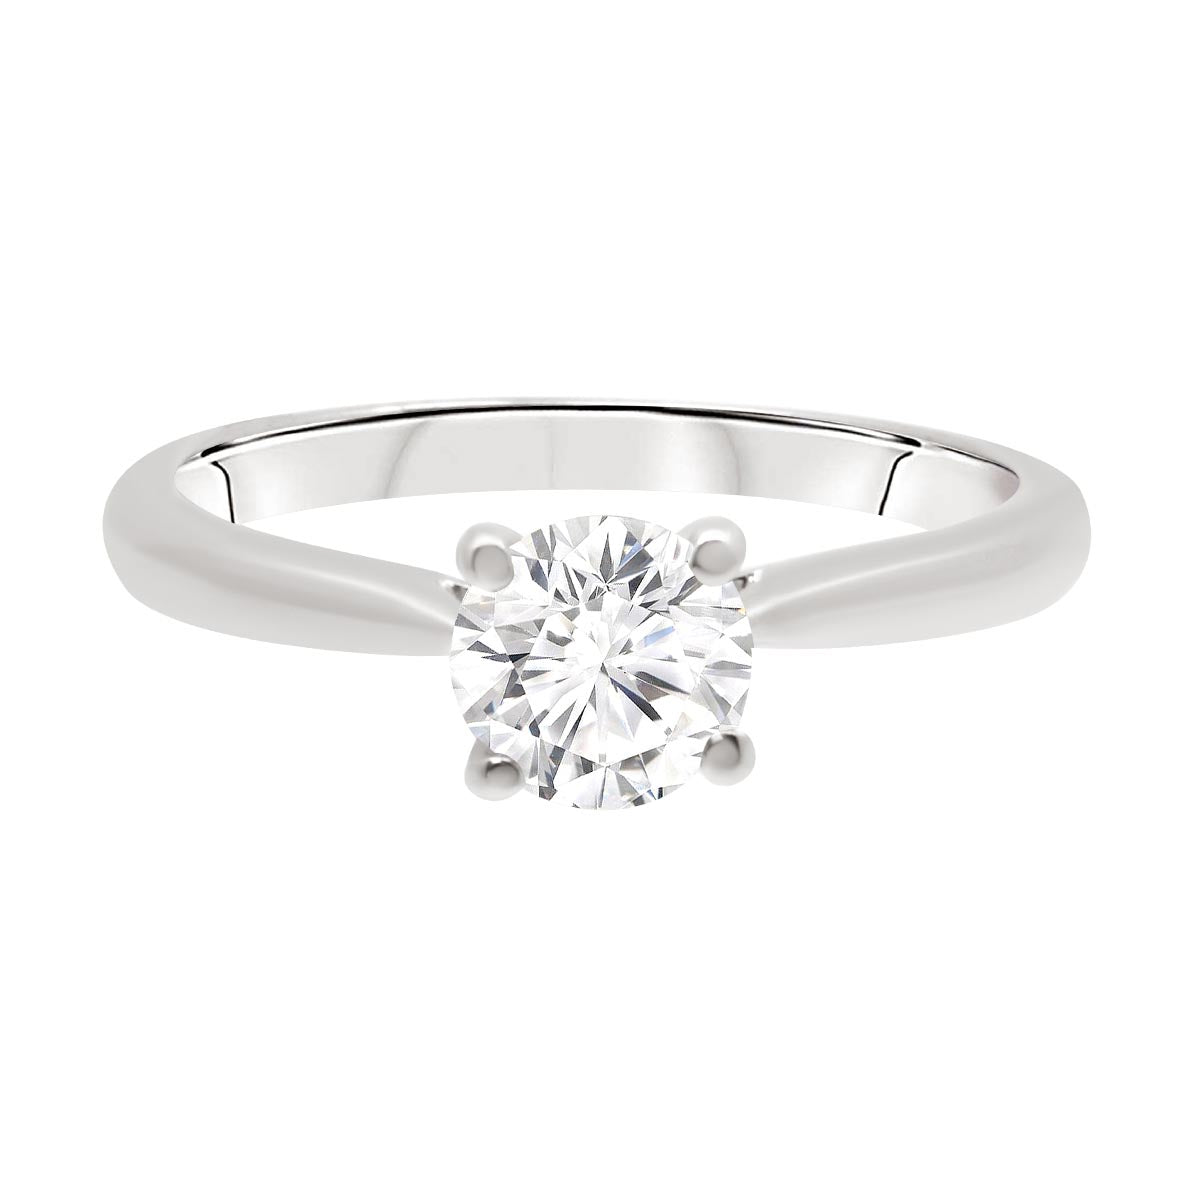 Hidden Diamond Detail engagement ring in white gold 